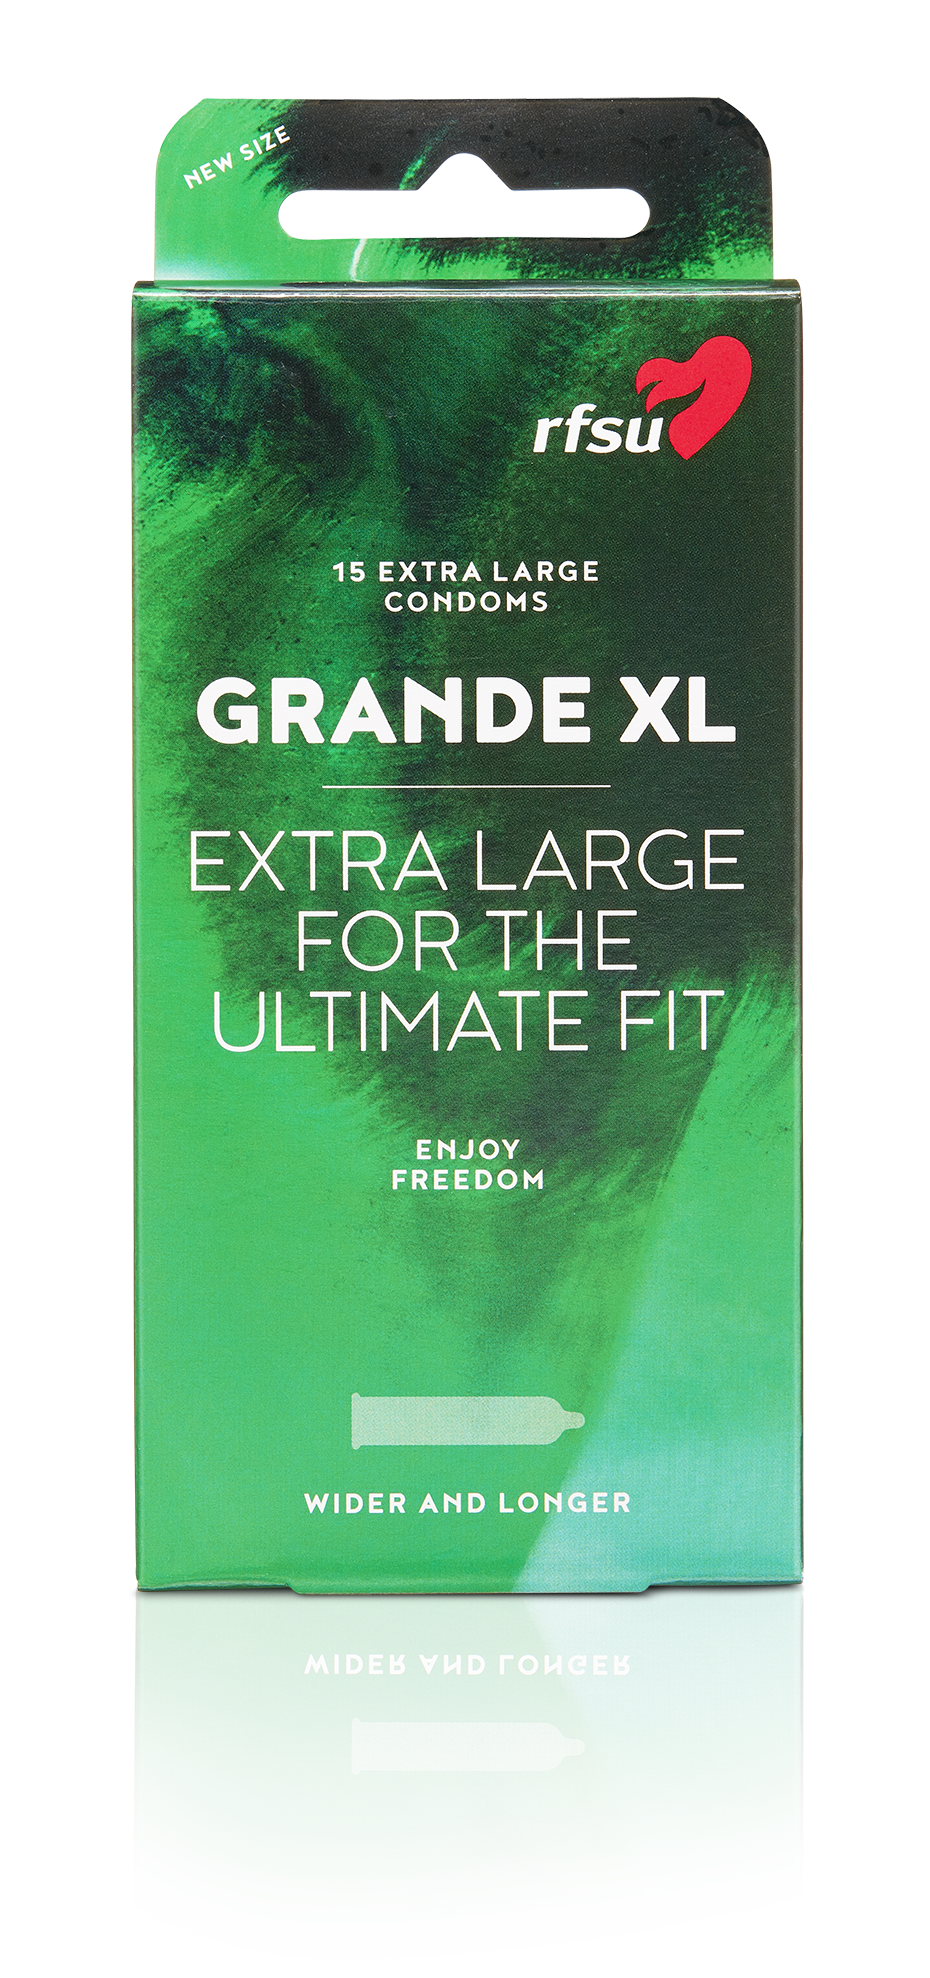 GRANDE XL | Extra Large Condoms